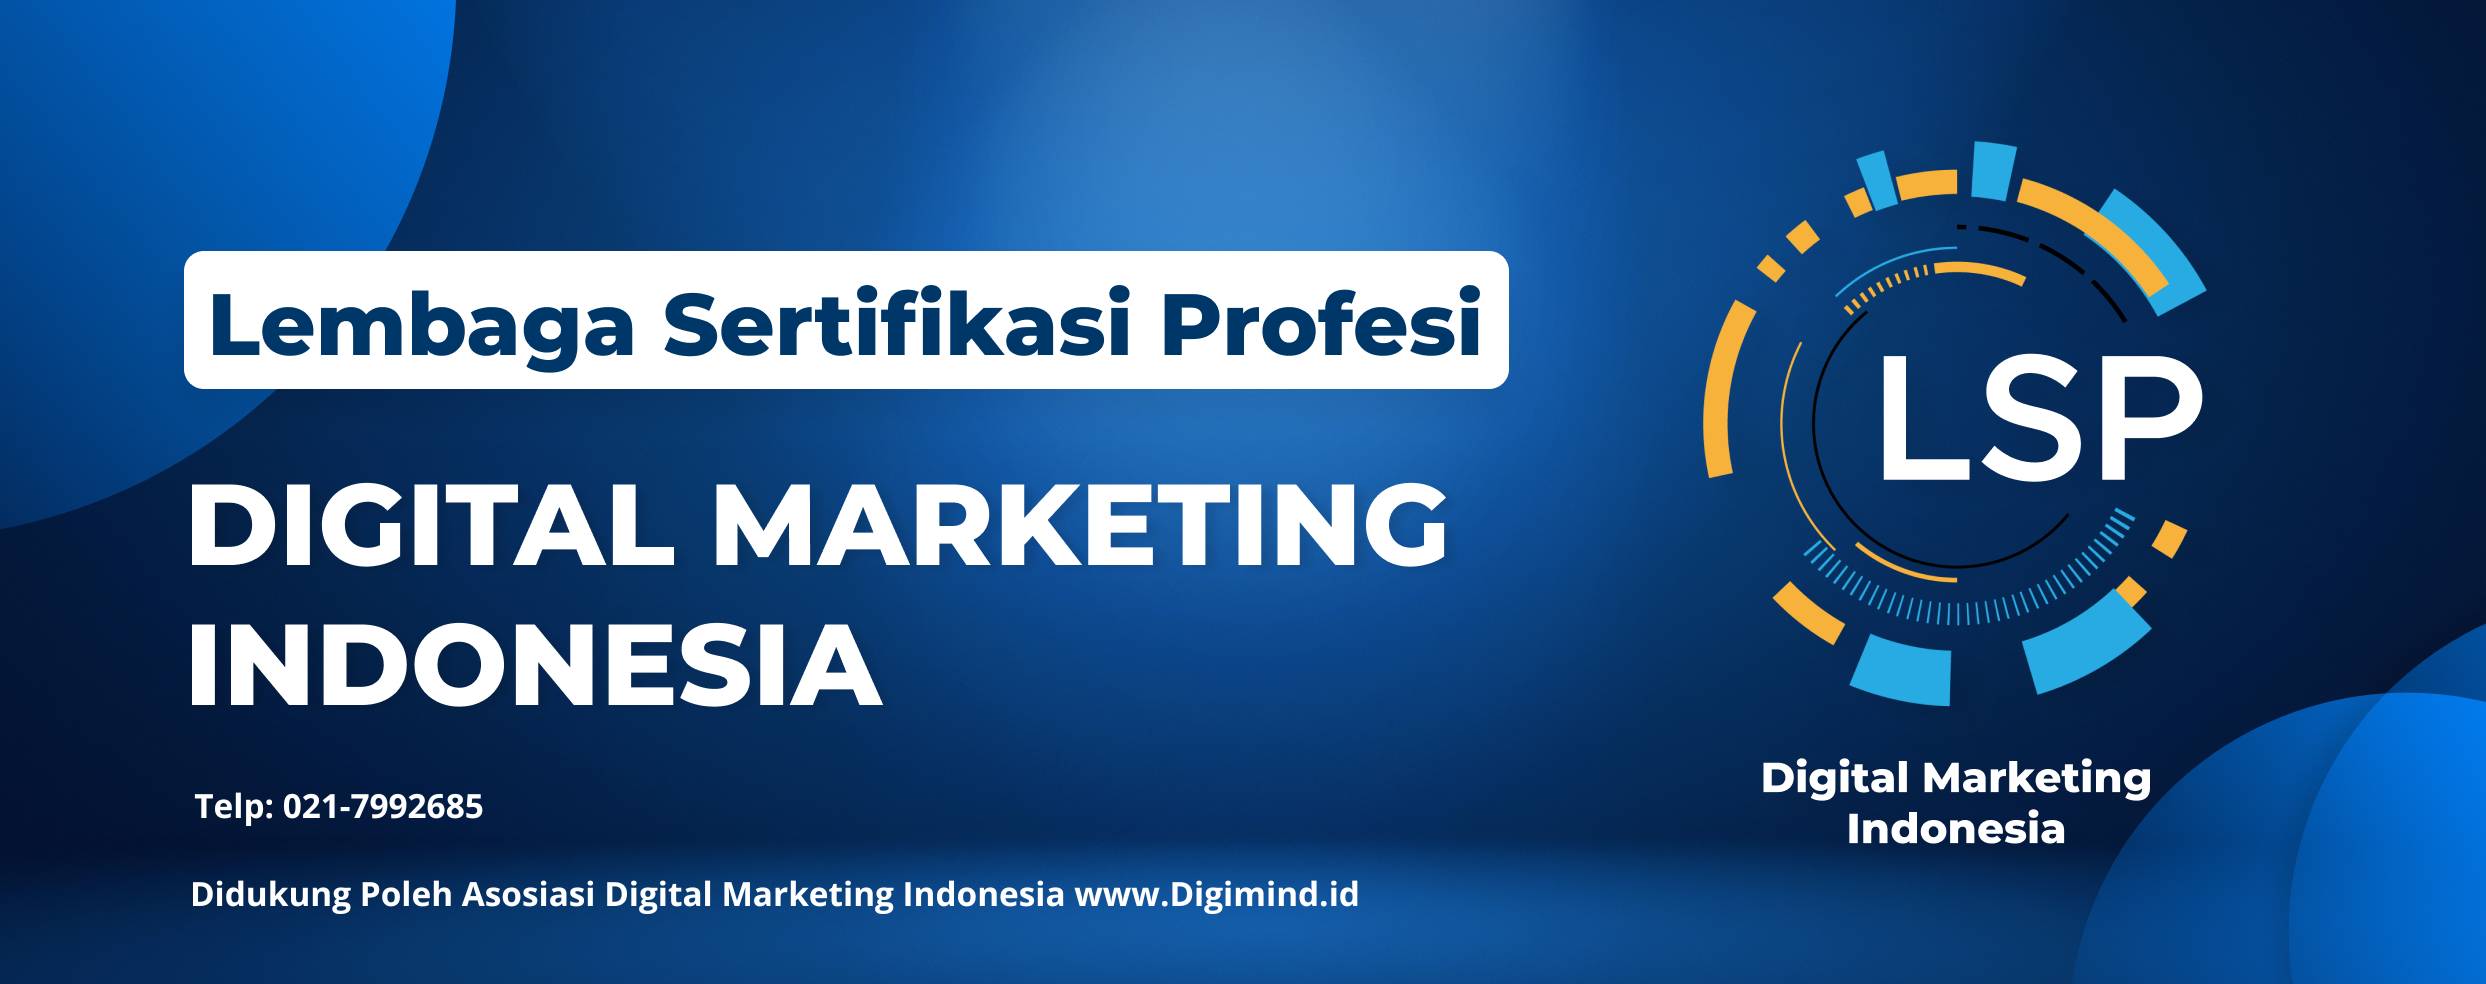 Didukung Poleh Asosiasi Digital Marketing Indonesia www.Digimind.id